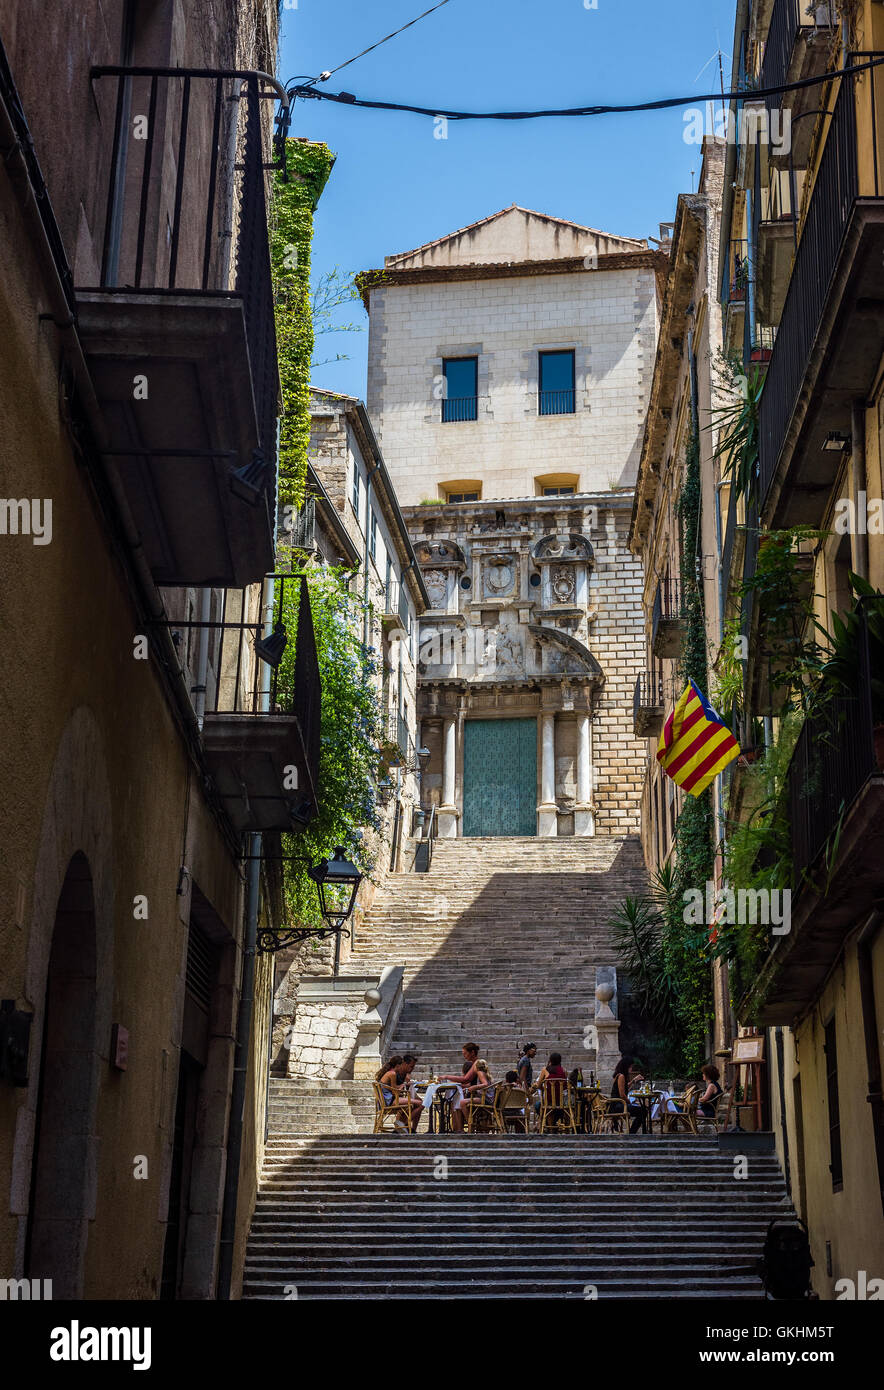 Sant Domenec street con una bandiera del movimento di indipendenza della Catalogna, chiamato Estelada (non ufficiali). Girona, Costa Brava, Spagna. Foto Stock